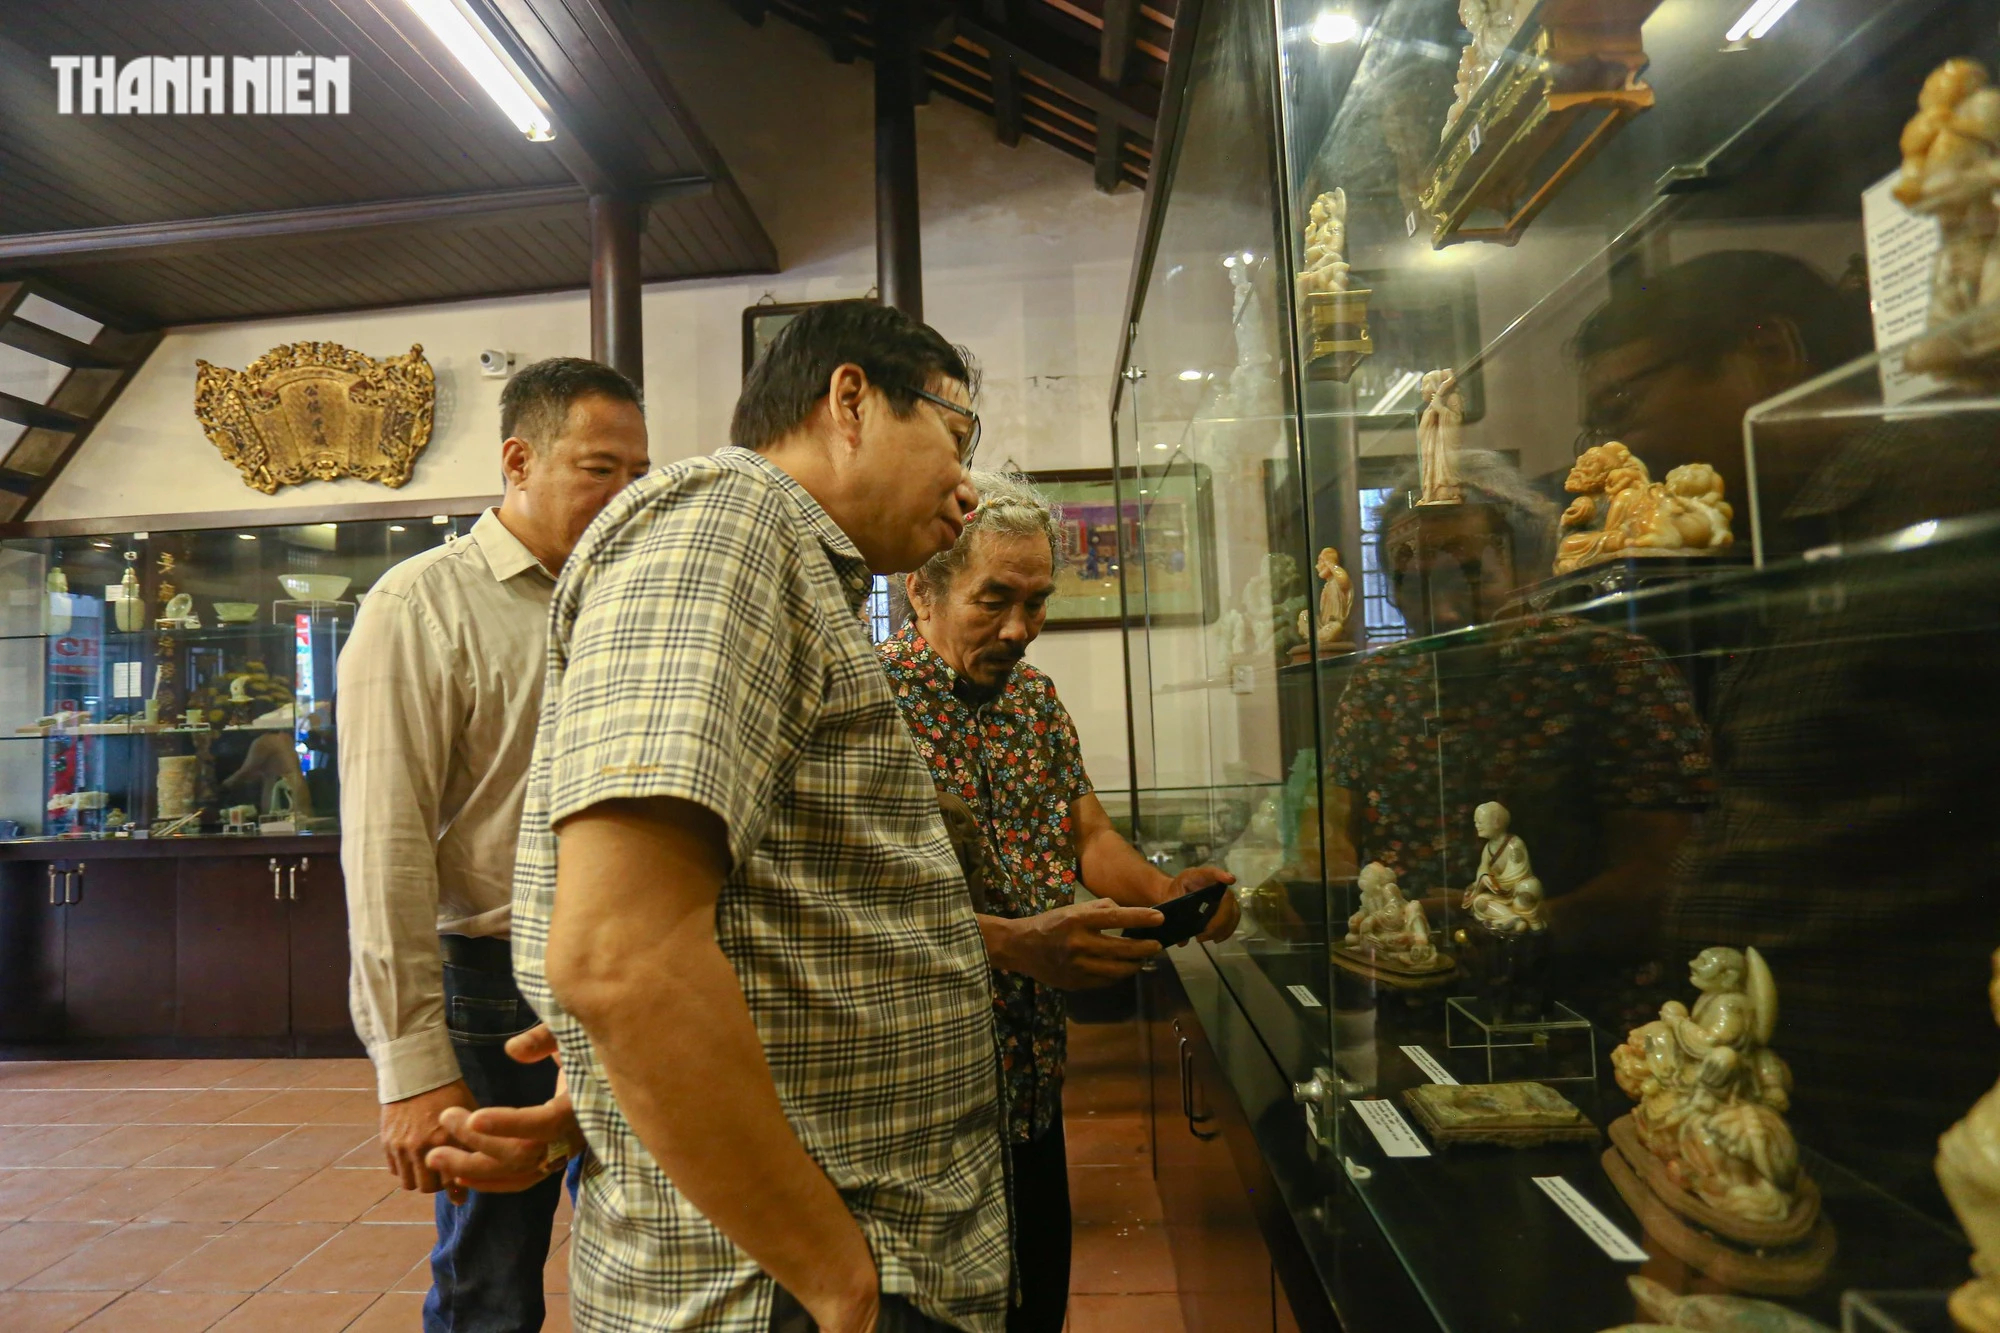 Chiêm ngưỡng hơn 70 món ngọc quý thời Nguyễn đang được trưng bày tại Huế - Ảnh 2.